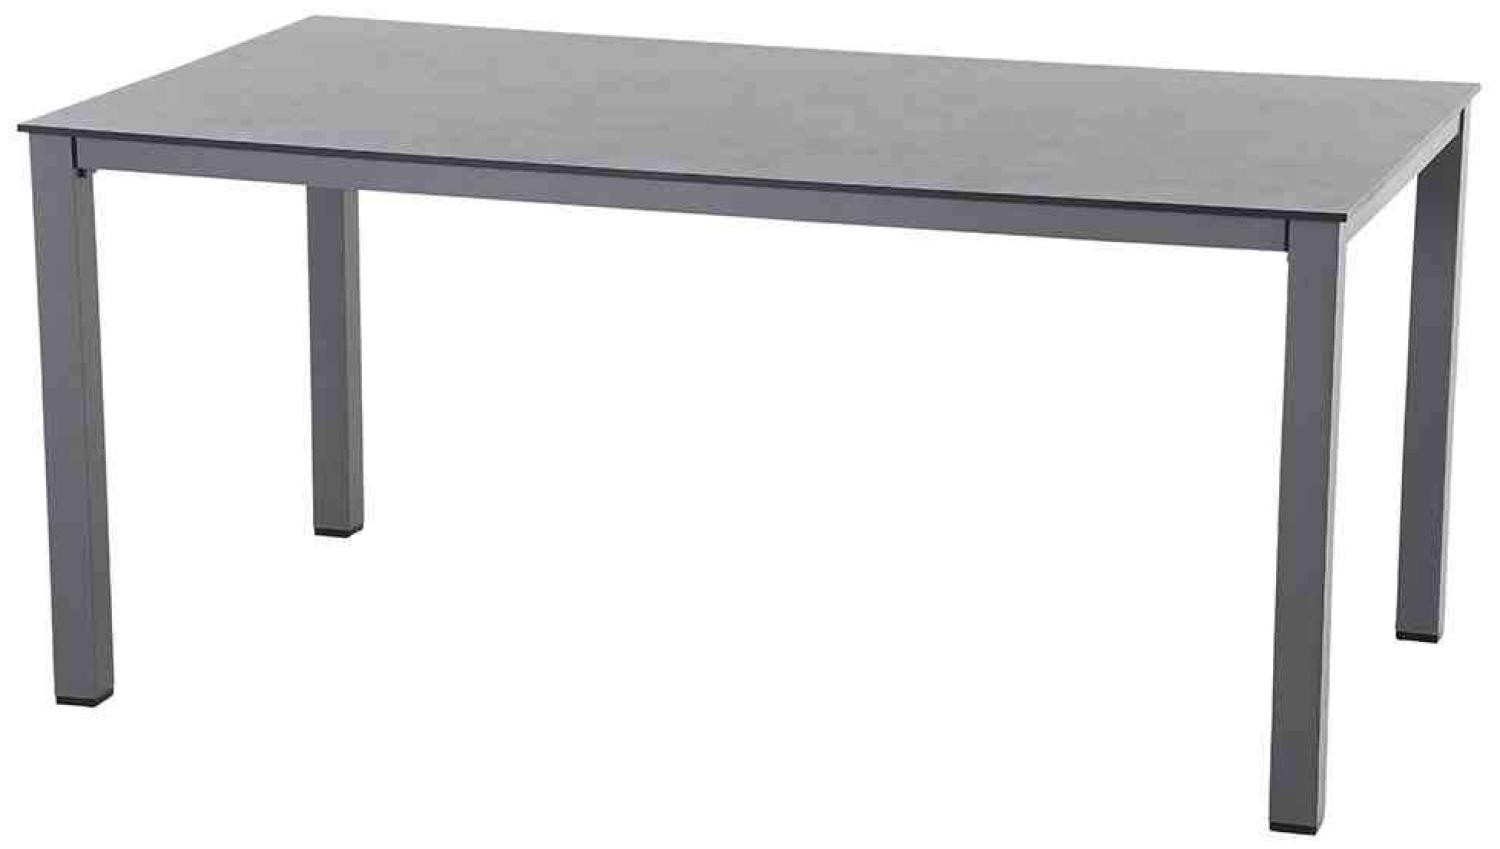 SIENA GARDEN Sola Dining Tisch 160x90 cm, anthrazit Gestell Aluminium anthrazit, Tischplatte HPL dark stone Bild 1